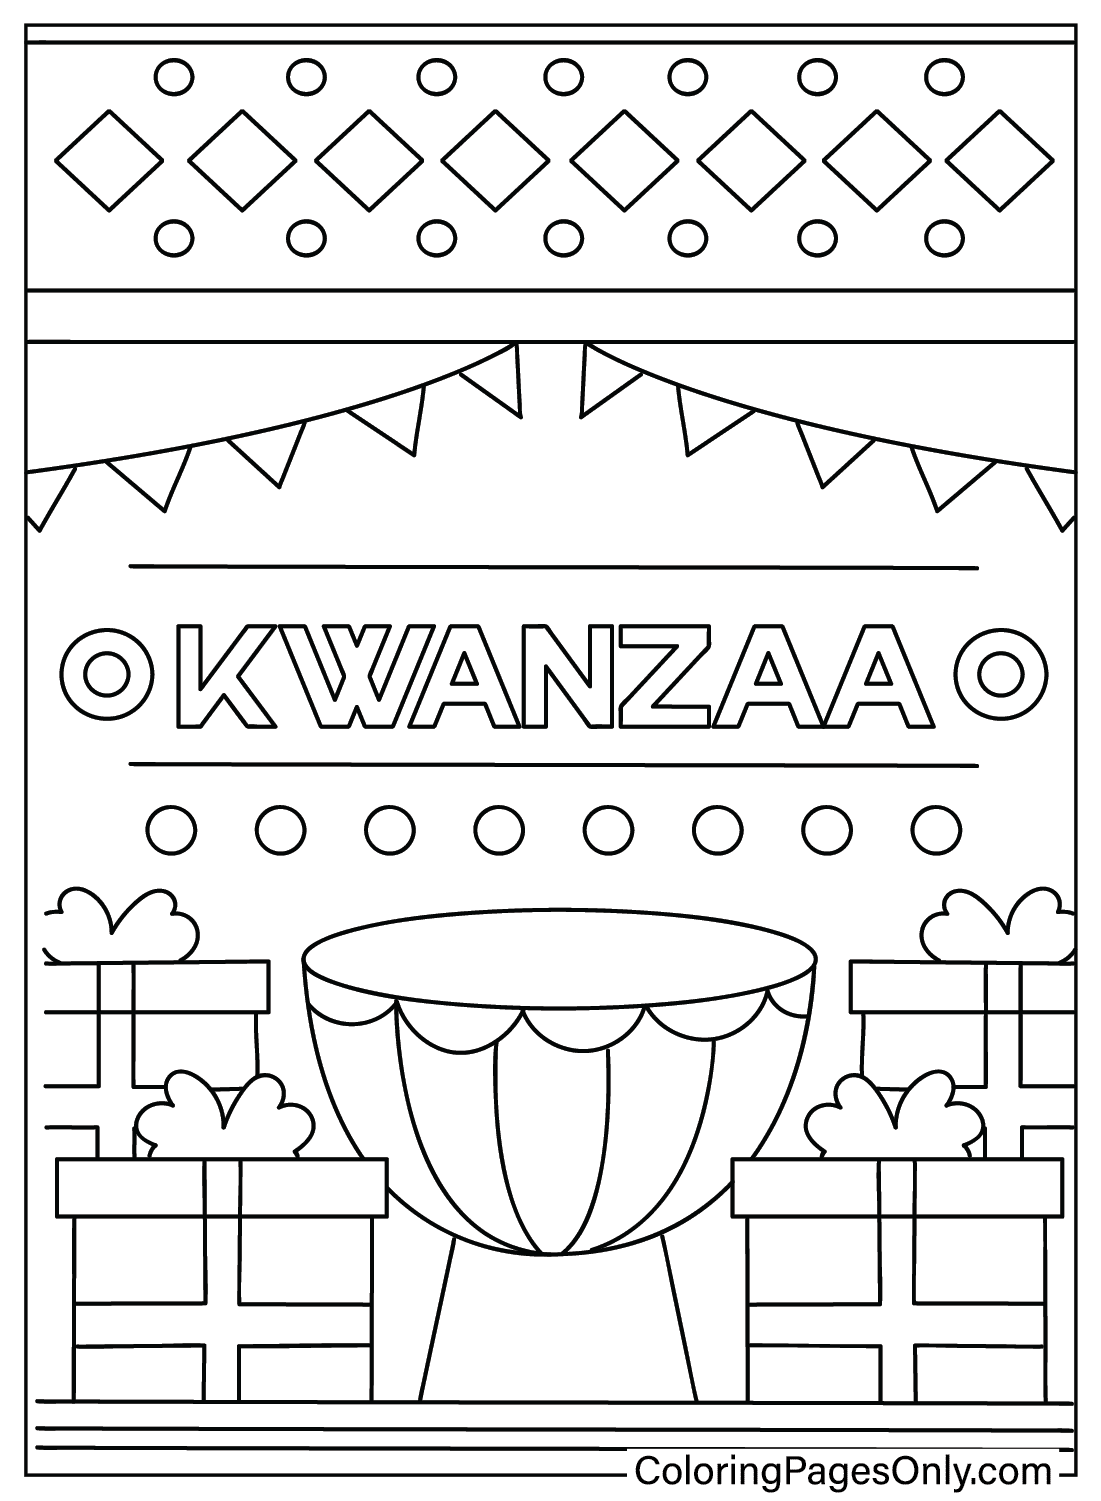 Pagina a colori Kwanzaa da Kwanzaa